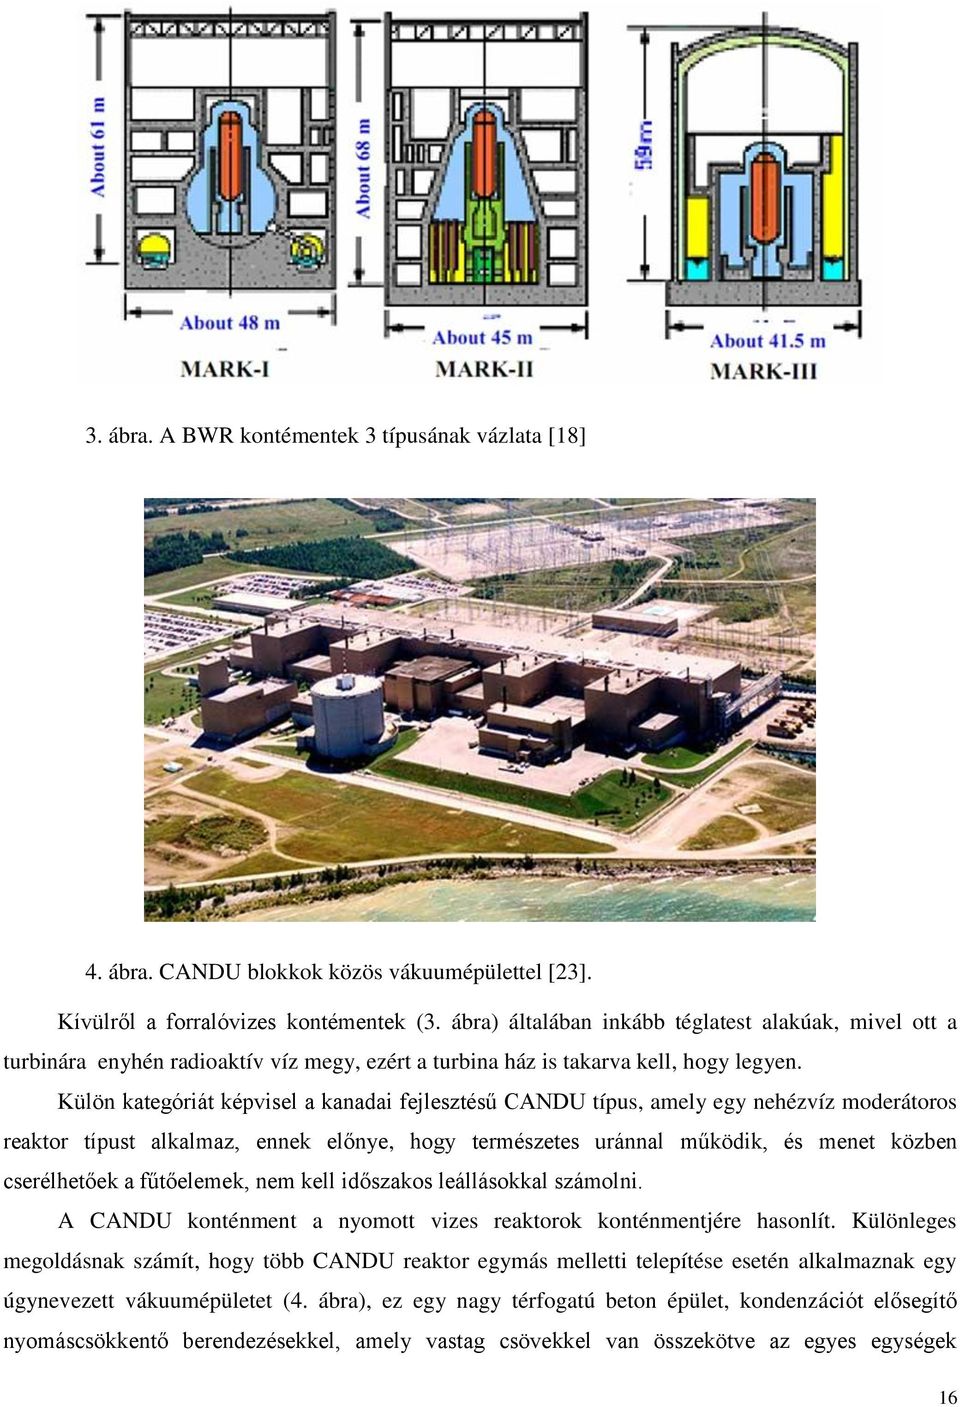 Külön kategóriát képvisel a kanadai fejlesztésű CANDU típus, amely egy nehézvíz moderátoros reaktor típust alkalmaz, ennek előnye, hogy természetes uránnal működik, és menet közben cserélhetőek a